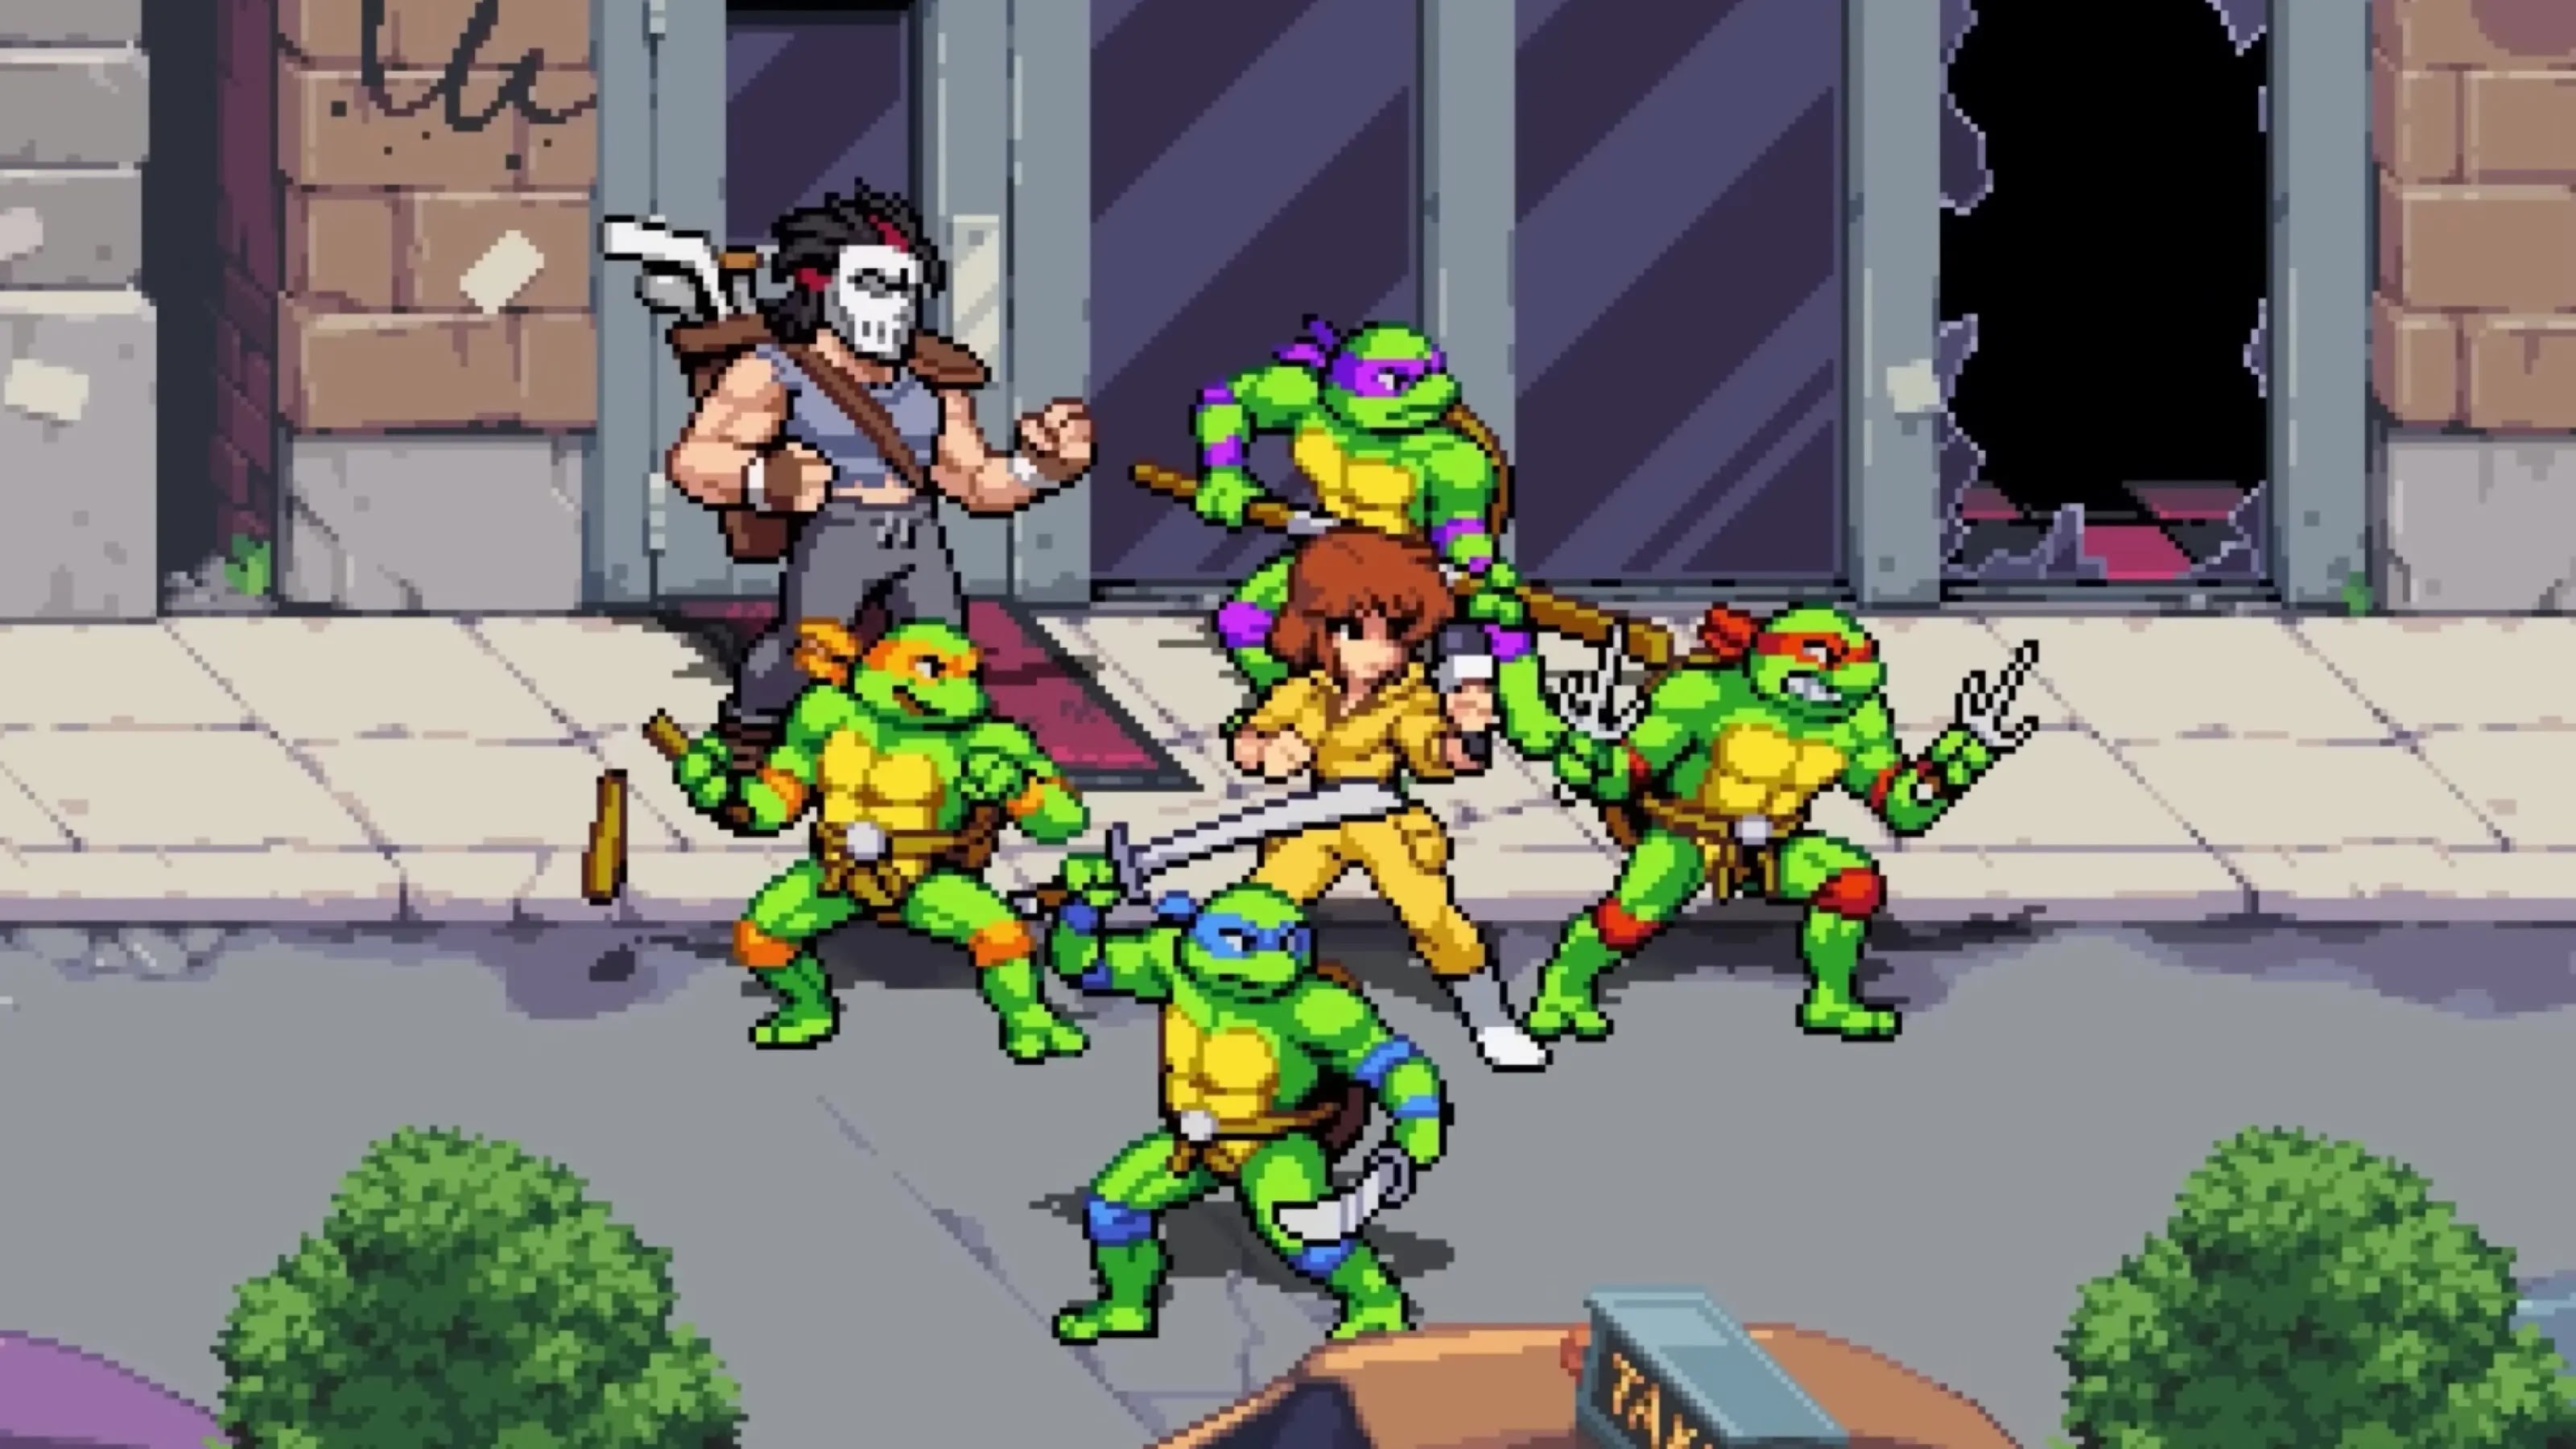 No More Bets beats Teenage Mutant Ninja Turtles at China box office